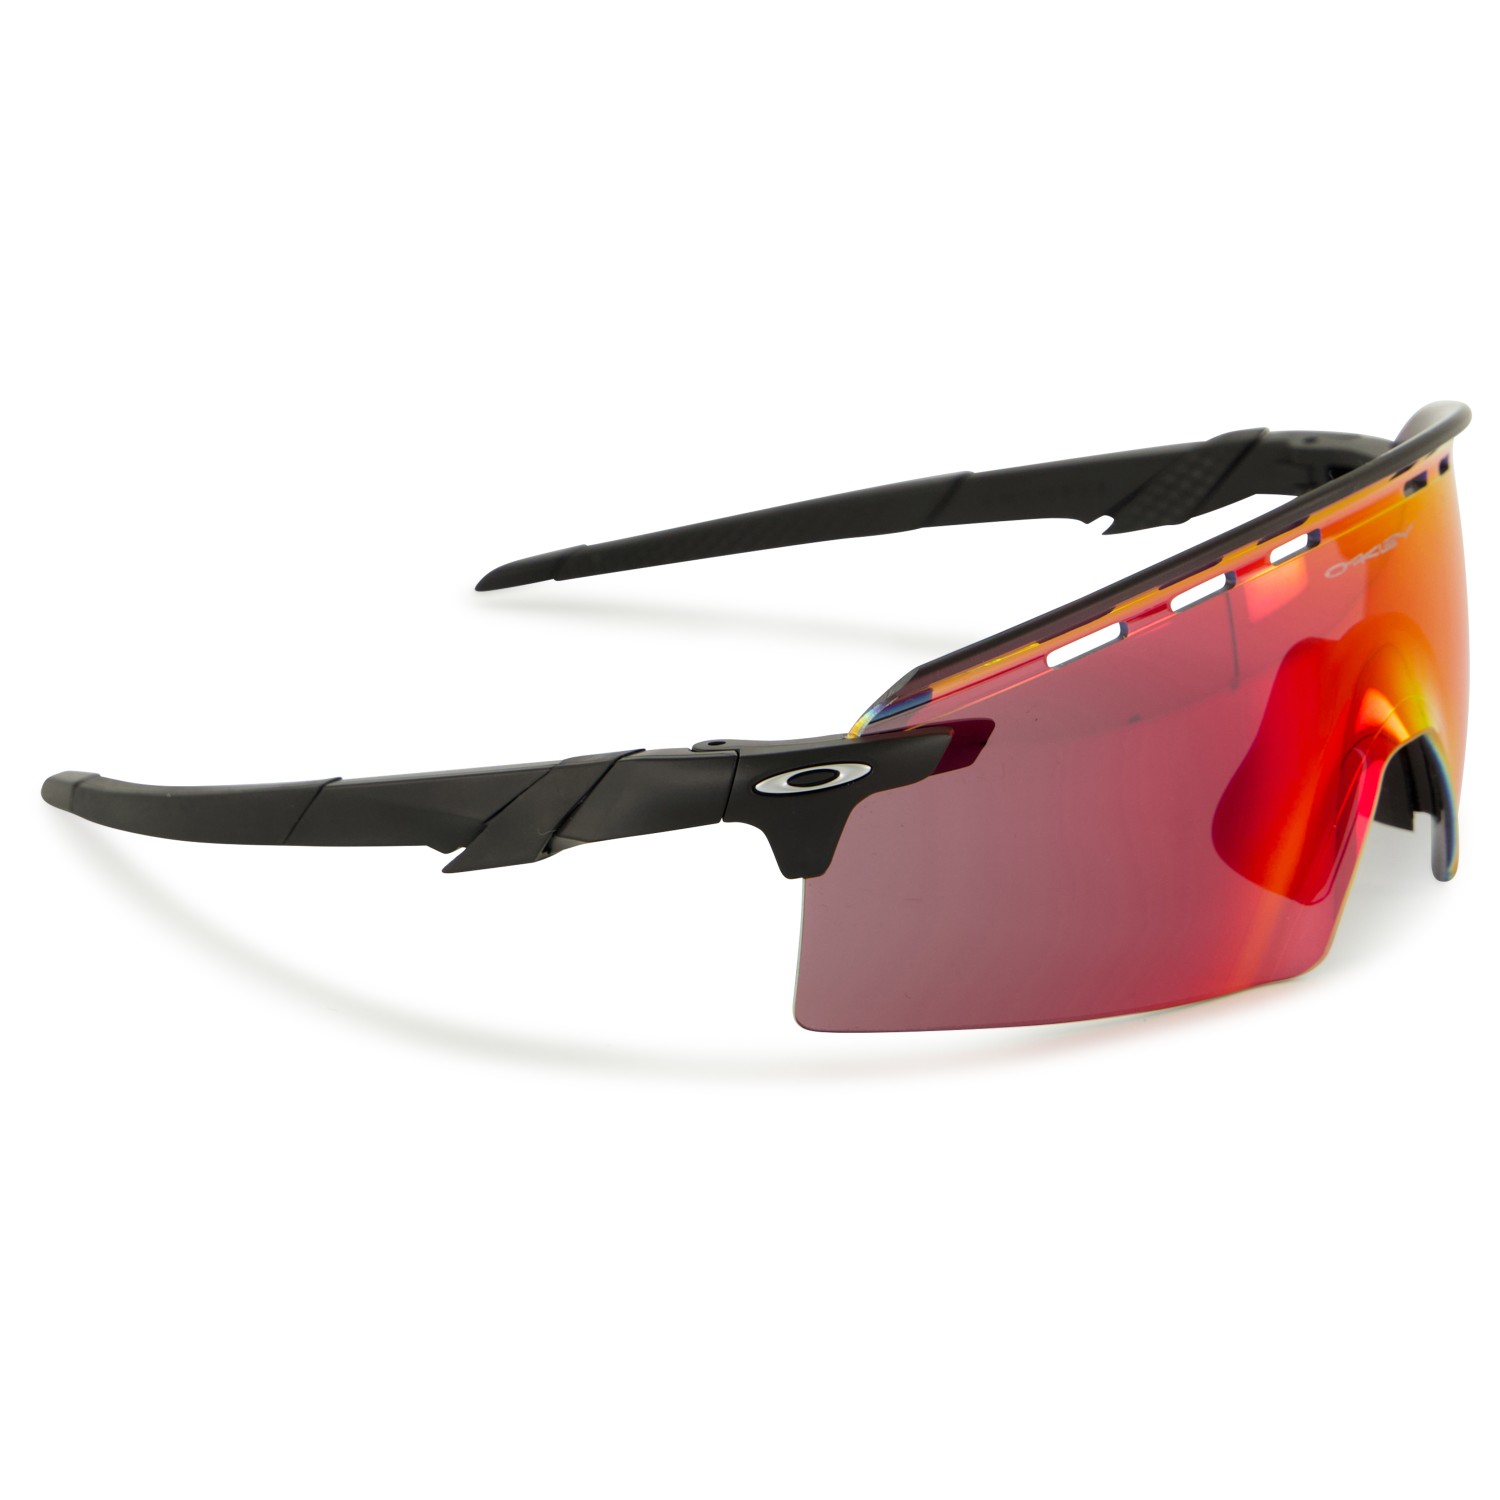 Велосипедные очки Oakley Encoder Strike Vented S2 (VLT 20%), матовый черный